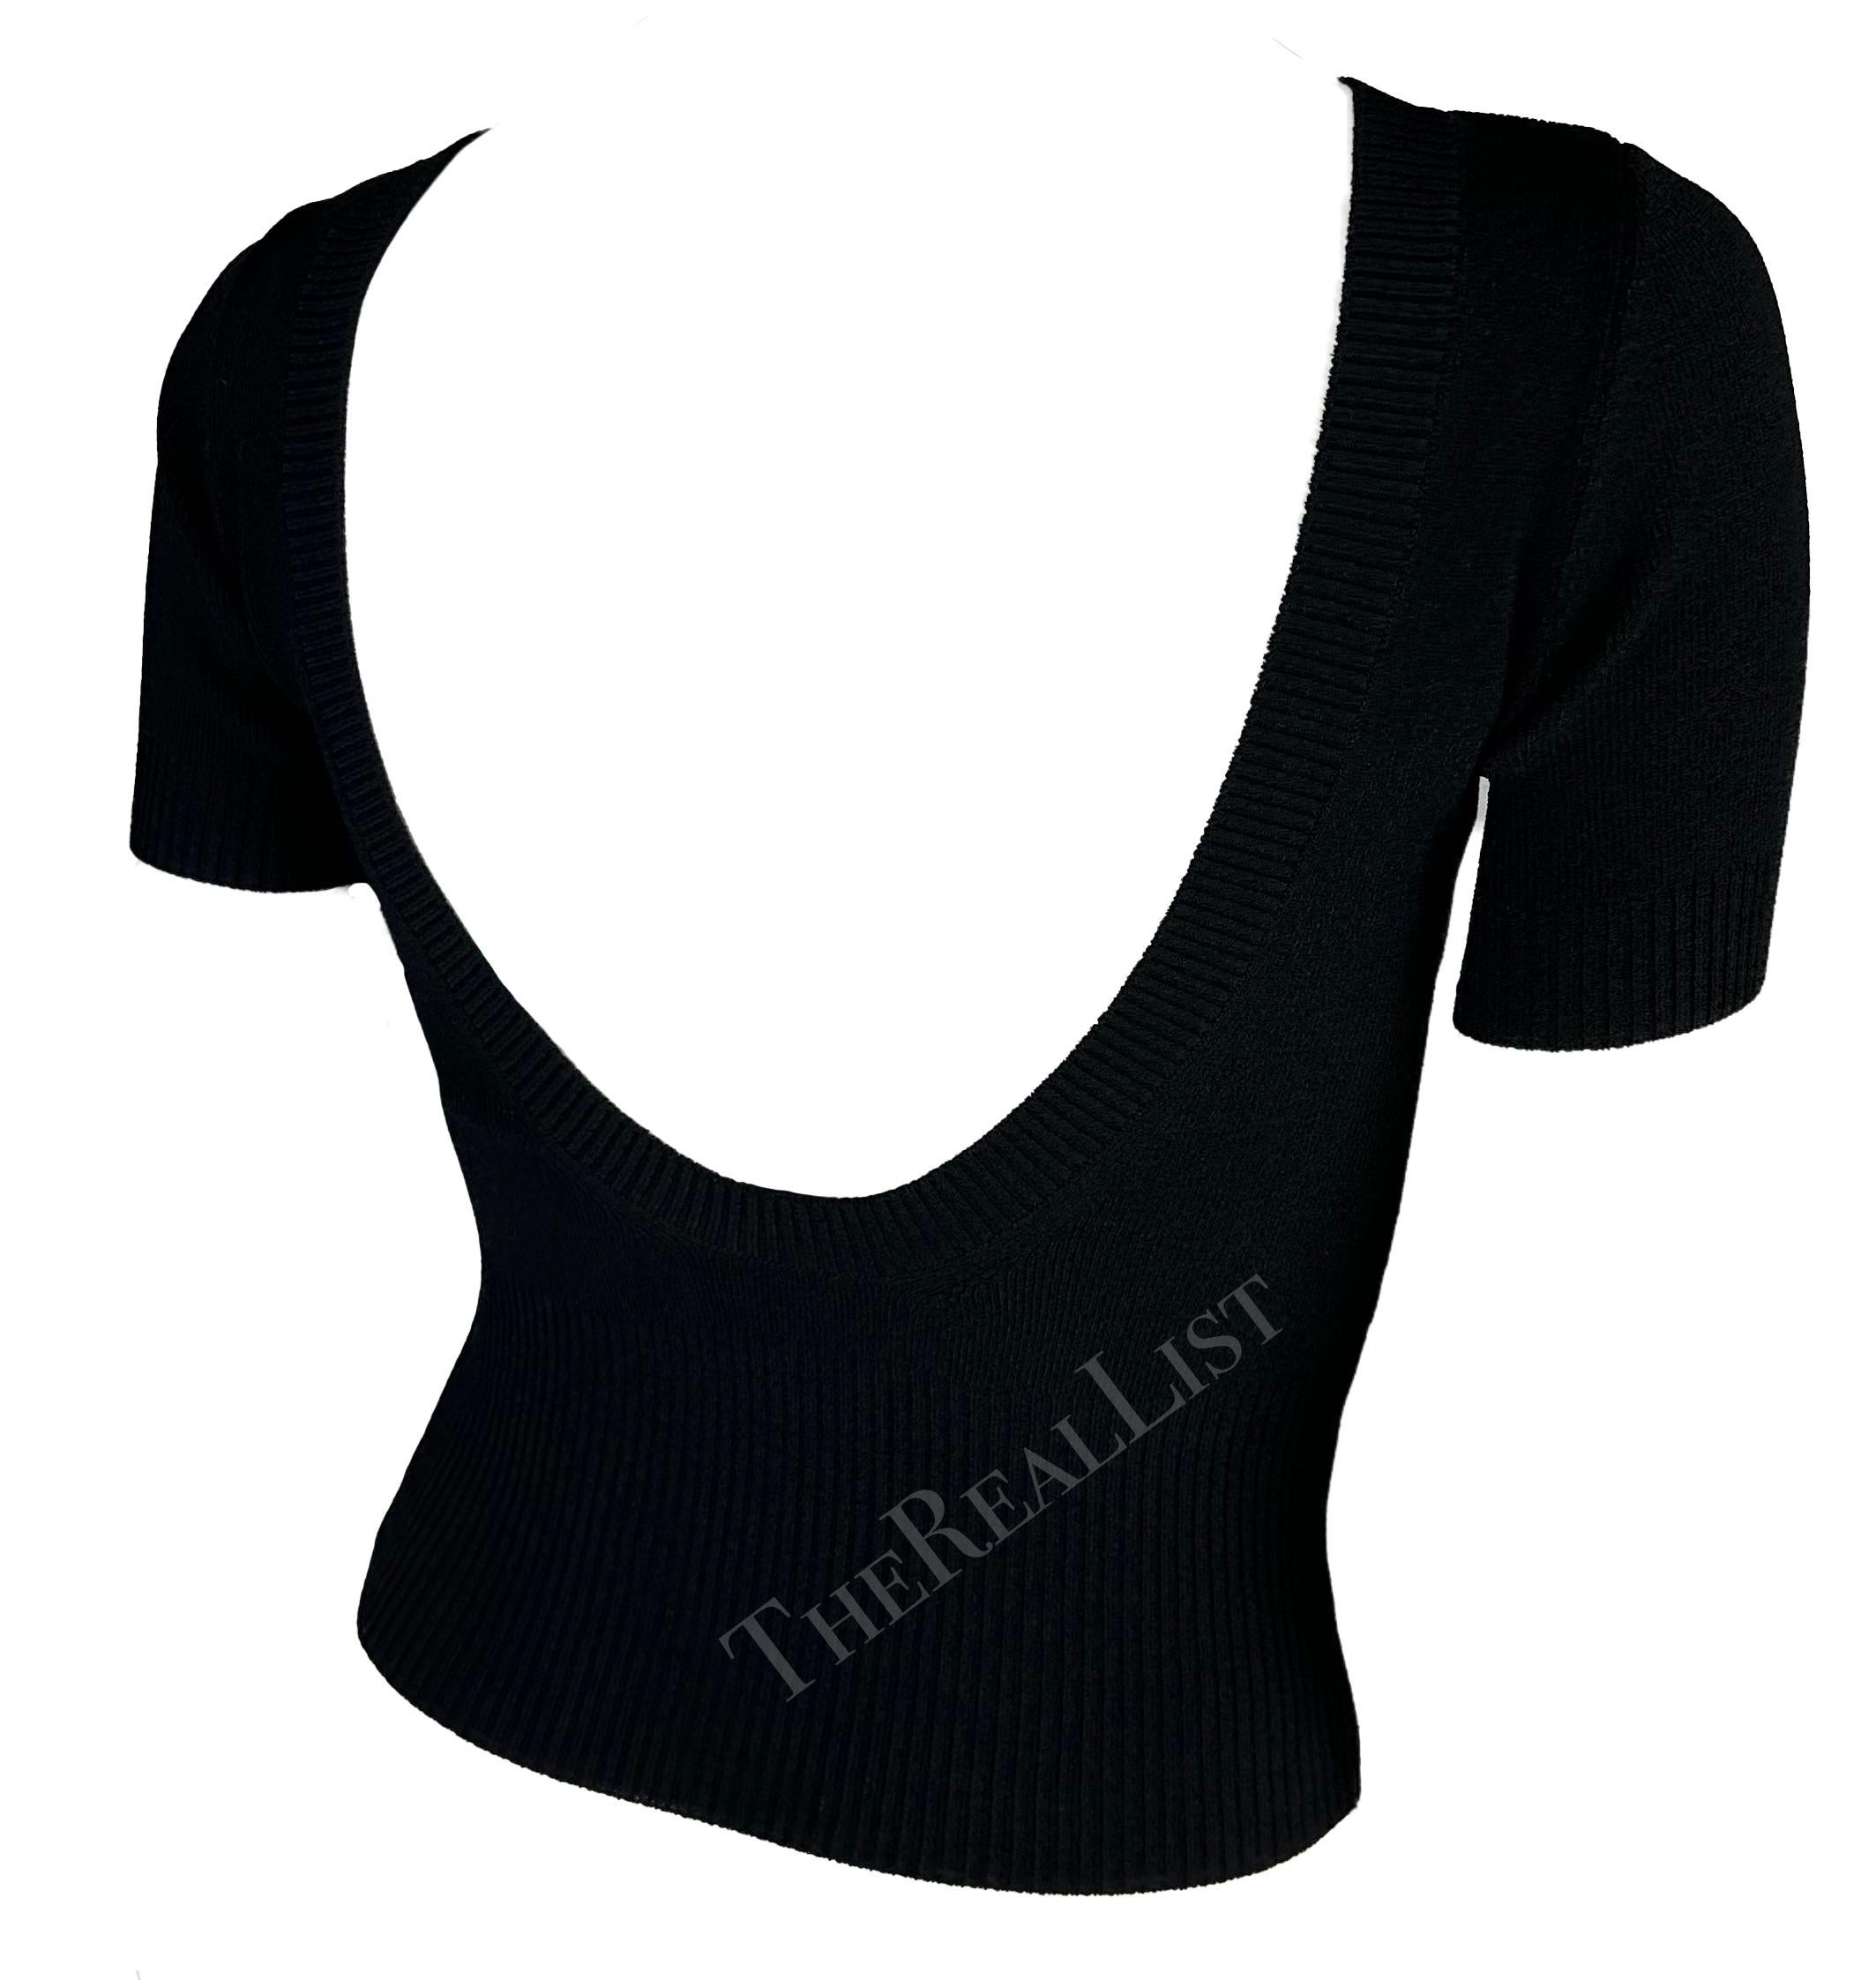 Voici un haut à manches courtes chic en tricot noir Dolce & Gabbana. Datant de la fin des années 1990, ce pull-over présente une encolure haute et est complété par un dos apparent. 

Mesures approximatives :
Taille - 42IT
De l'épaule à l'ourlet :